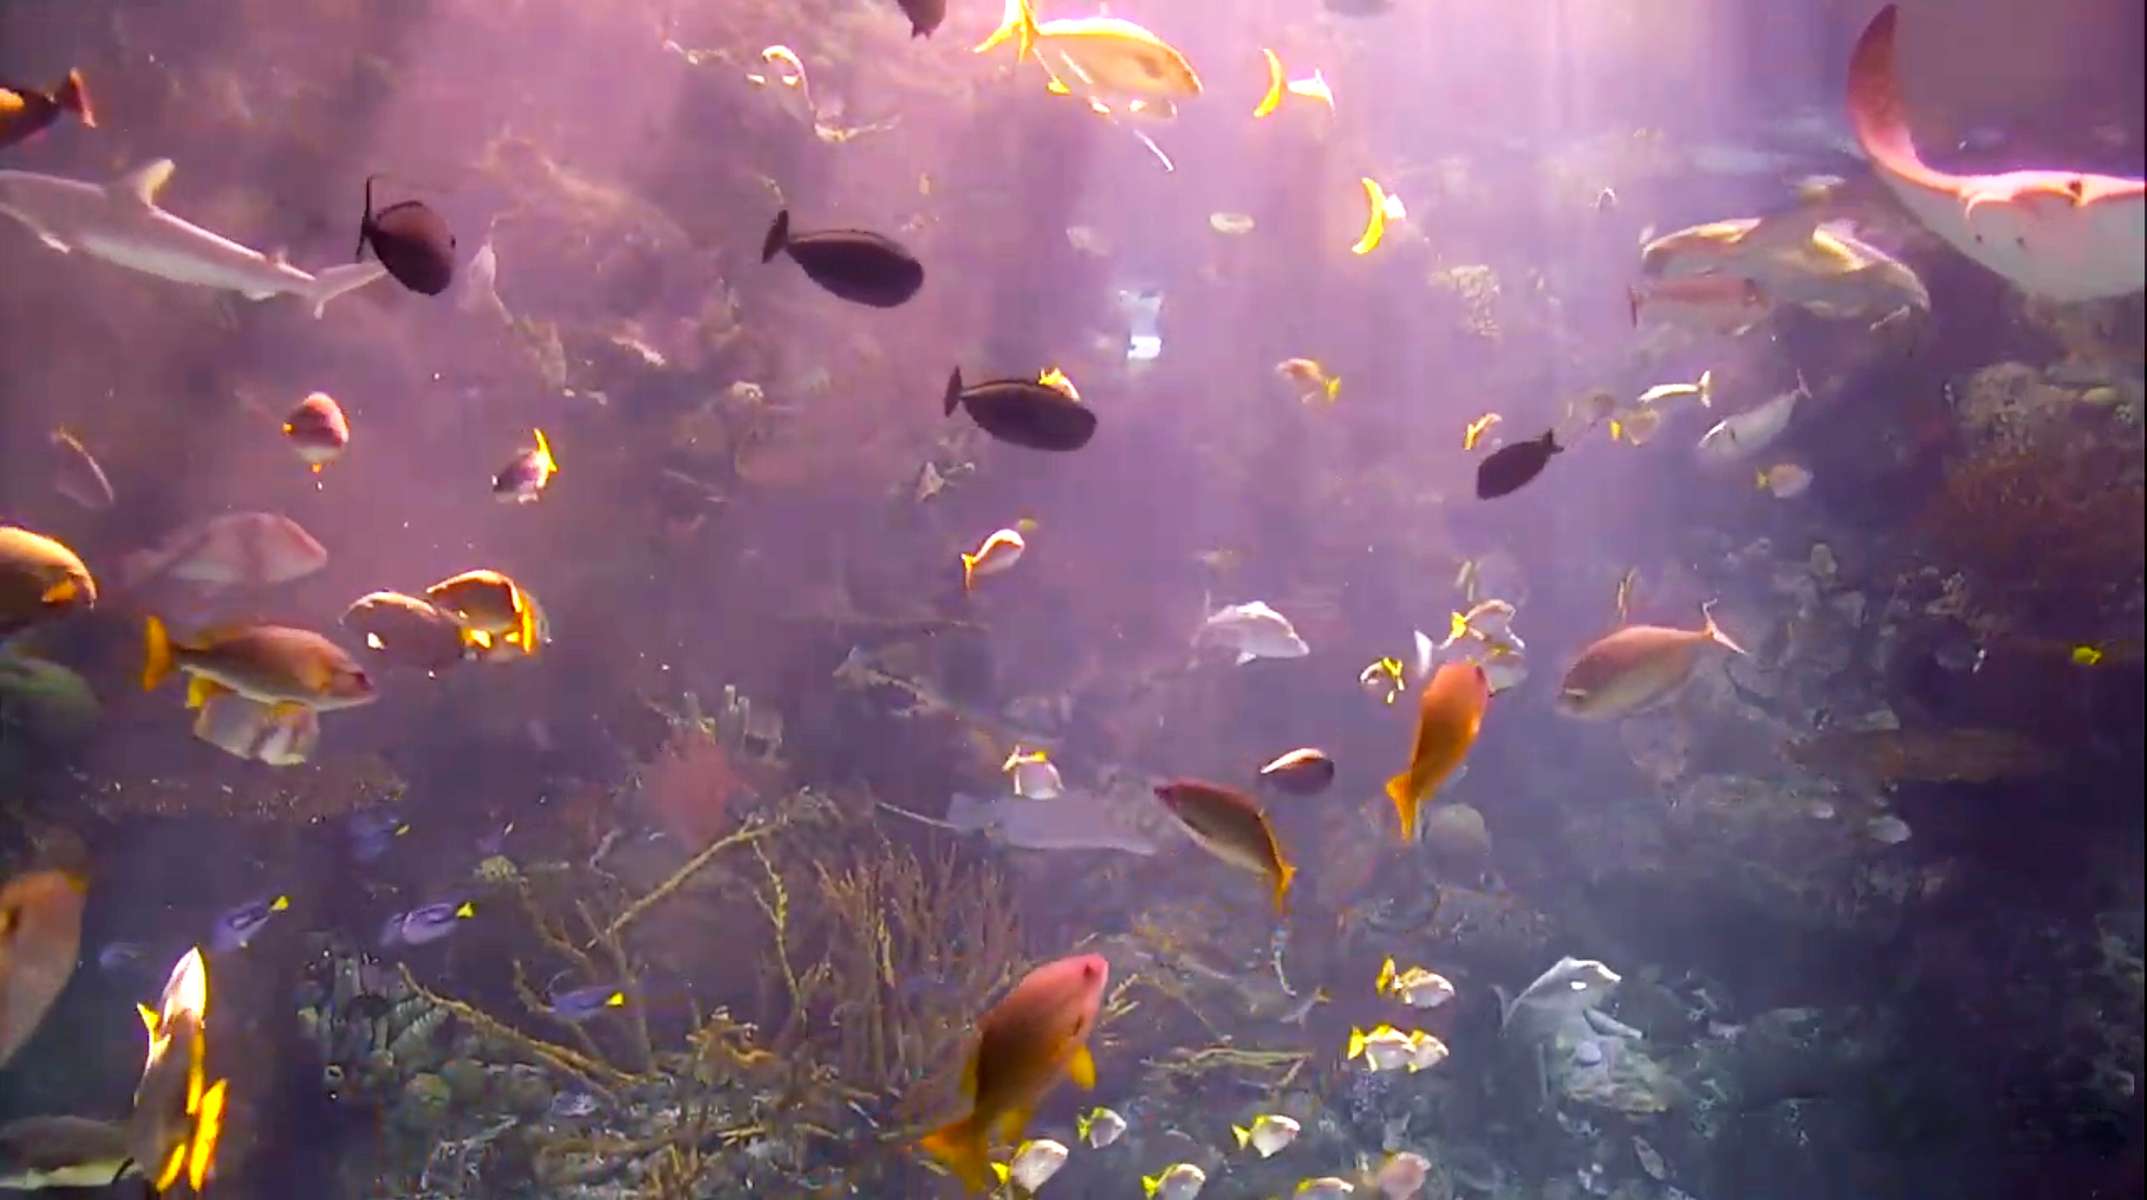 Coral reef aquarium, Aquarium of the Pacific, Long Beach, California. May 13, 2020, 4:36:32 PM PST